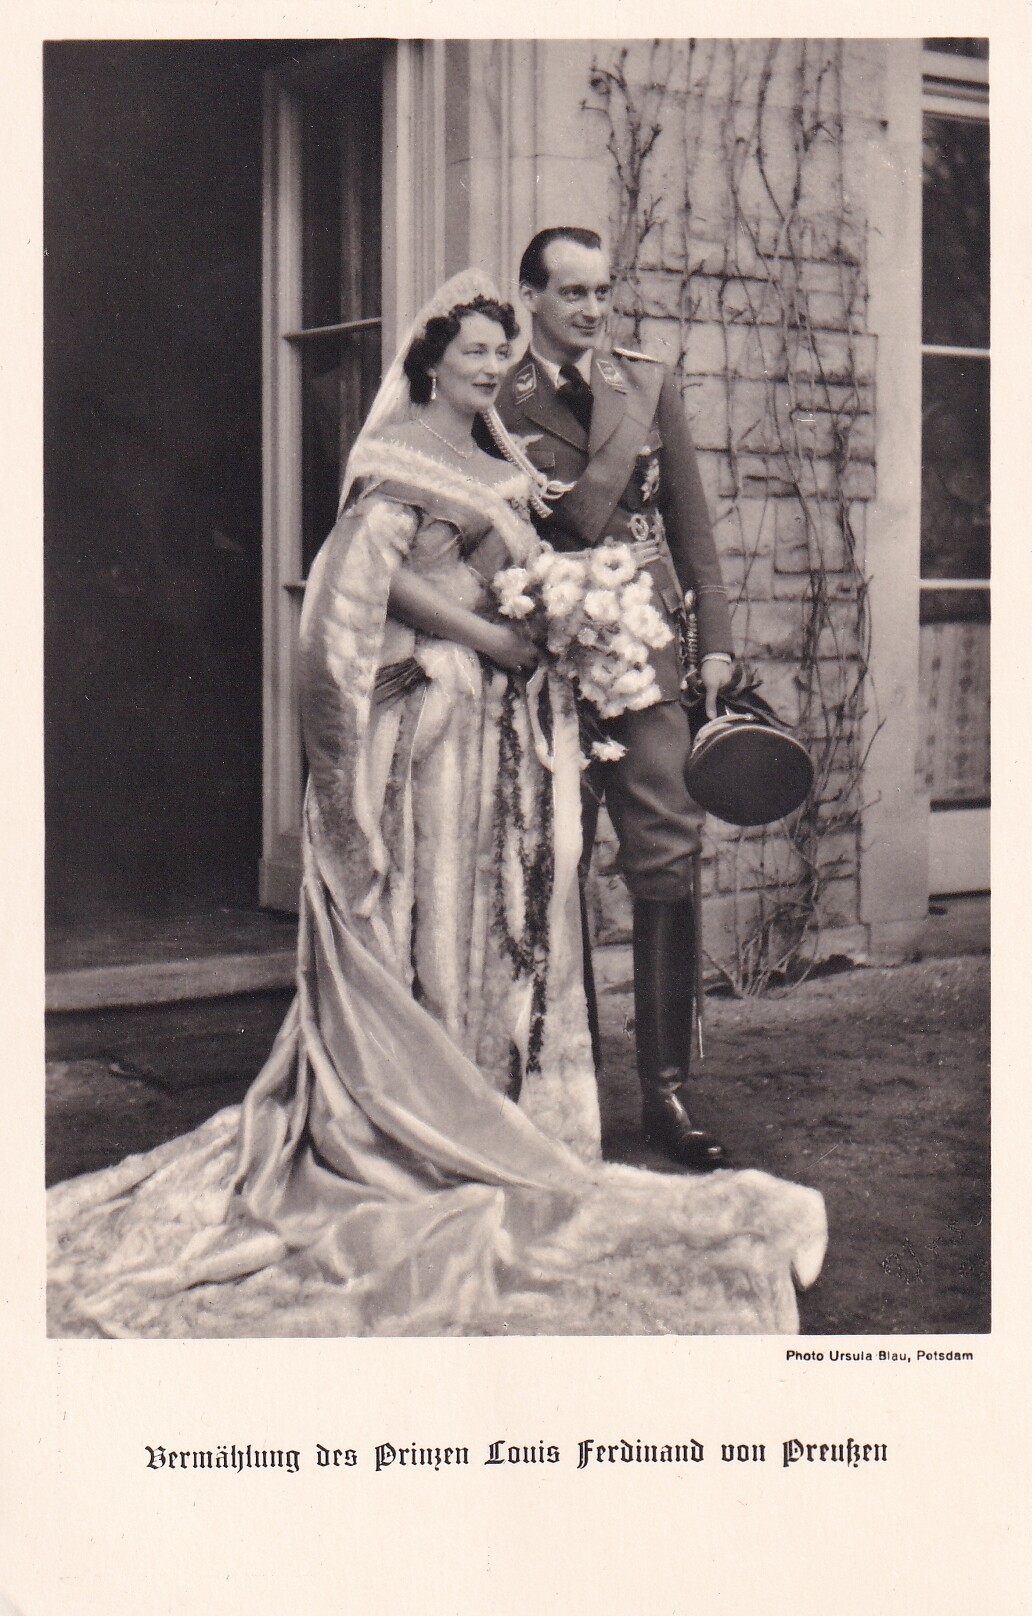 Bildpostkarte mit Hochzeitsfoto von Louis Ferdinand Prinz und Kira Prinzessin von Preußen am 2.5.1938 (Schloß Wernigerode GmbH RR-F)